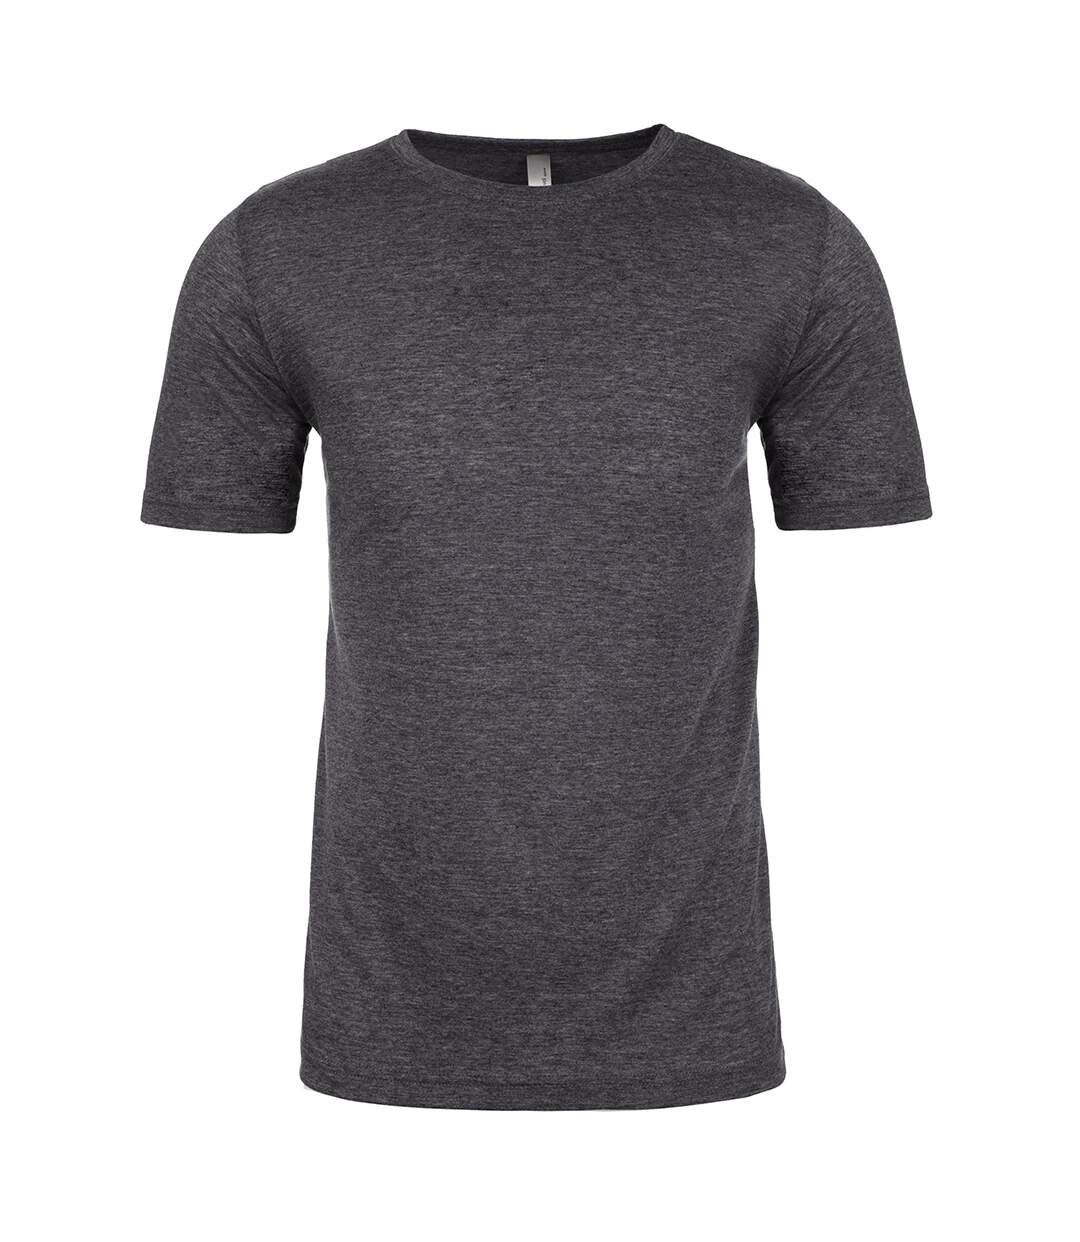 Next Level - T-shirt - Homme (Gris foncé) - UTPC4182